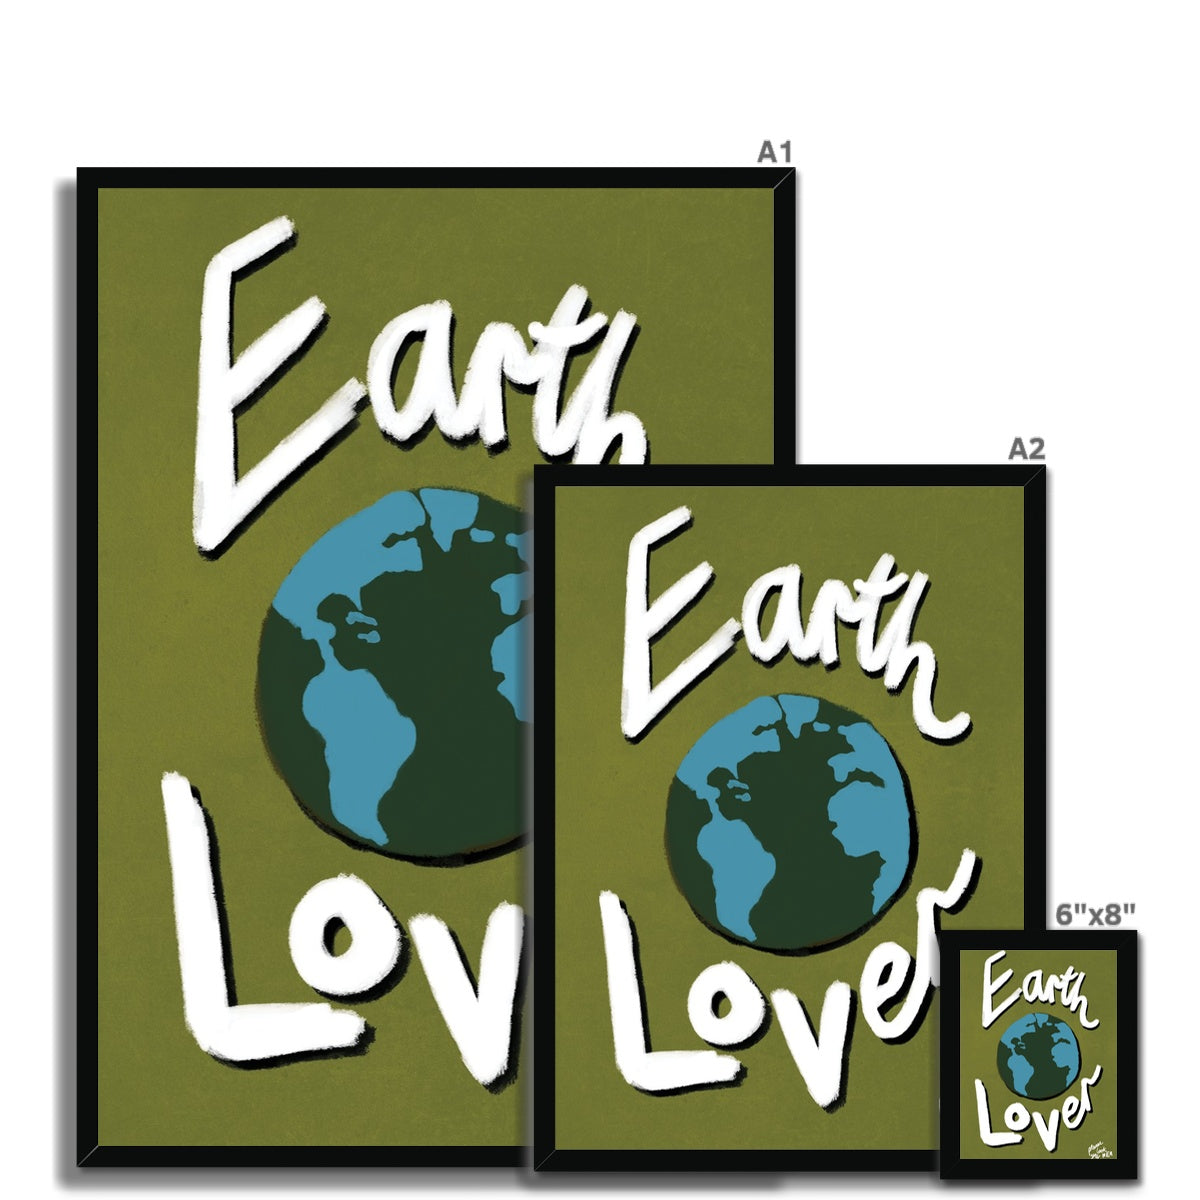 Earth Lover Print - Olive Green, Blue, White Framed Print